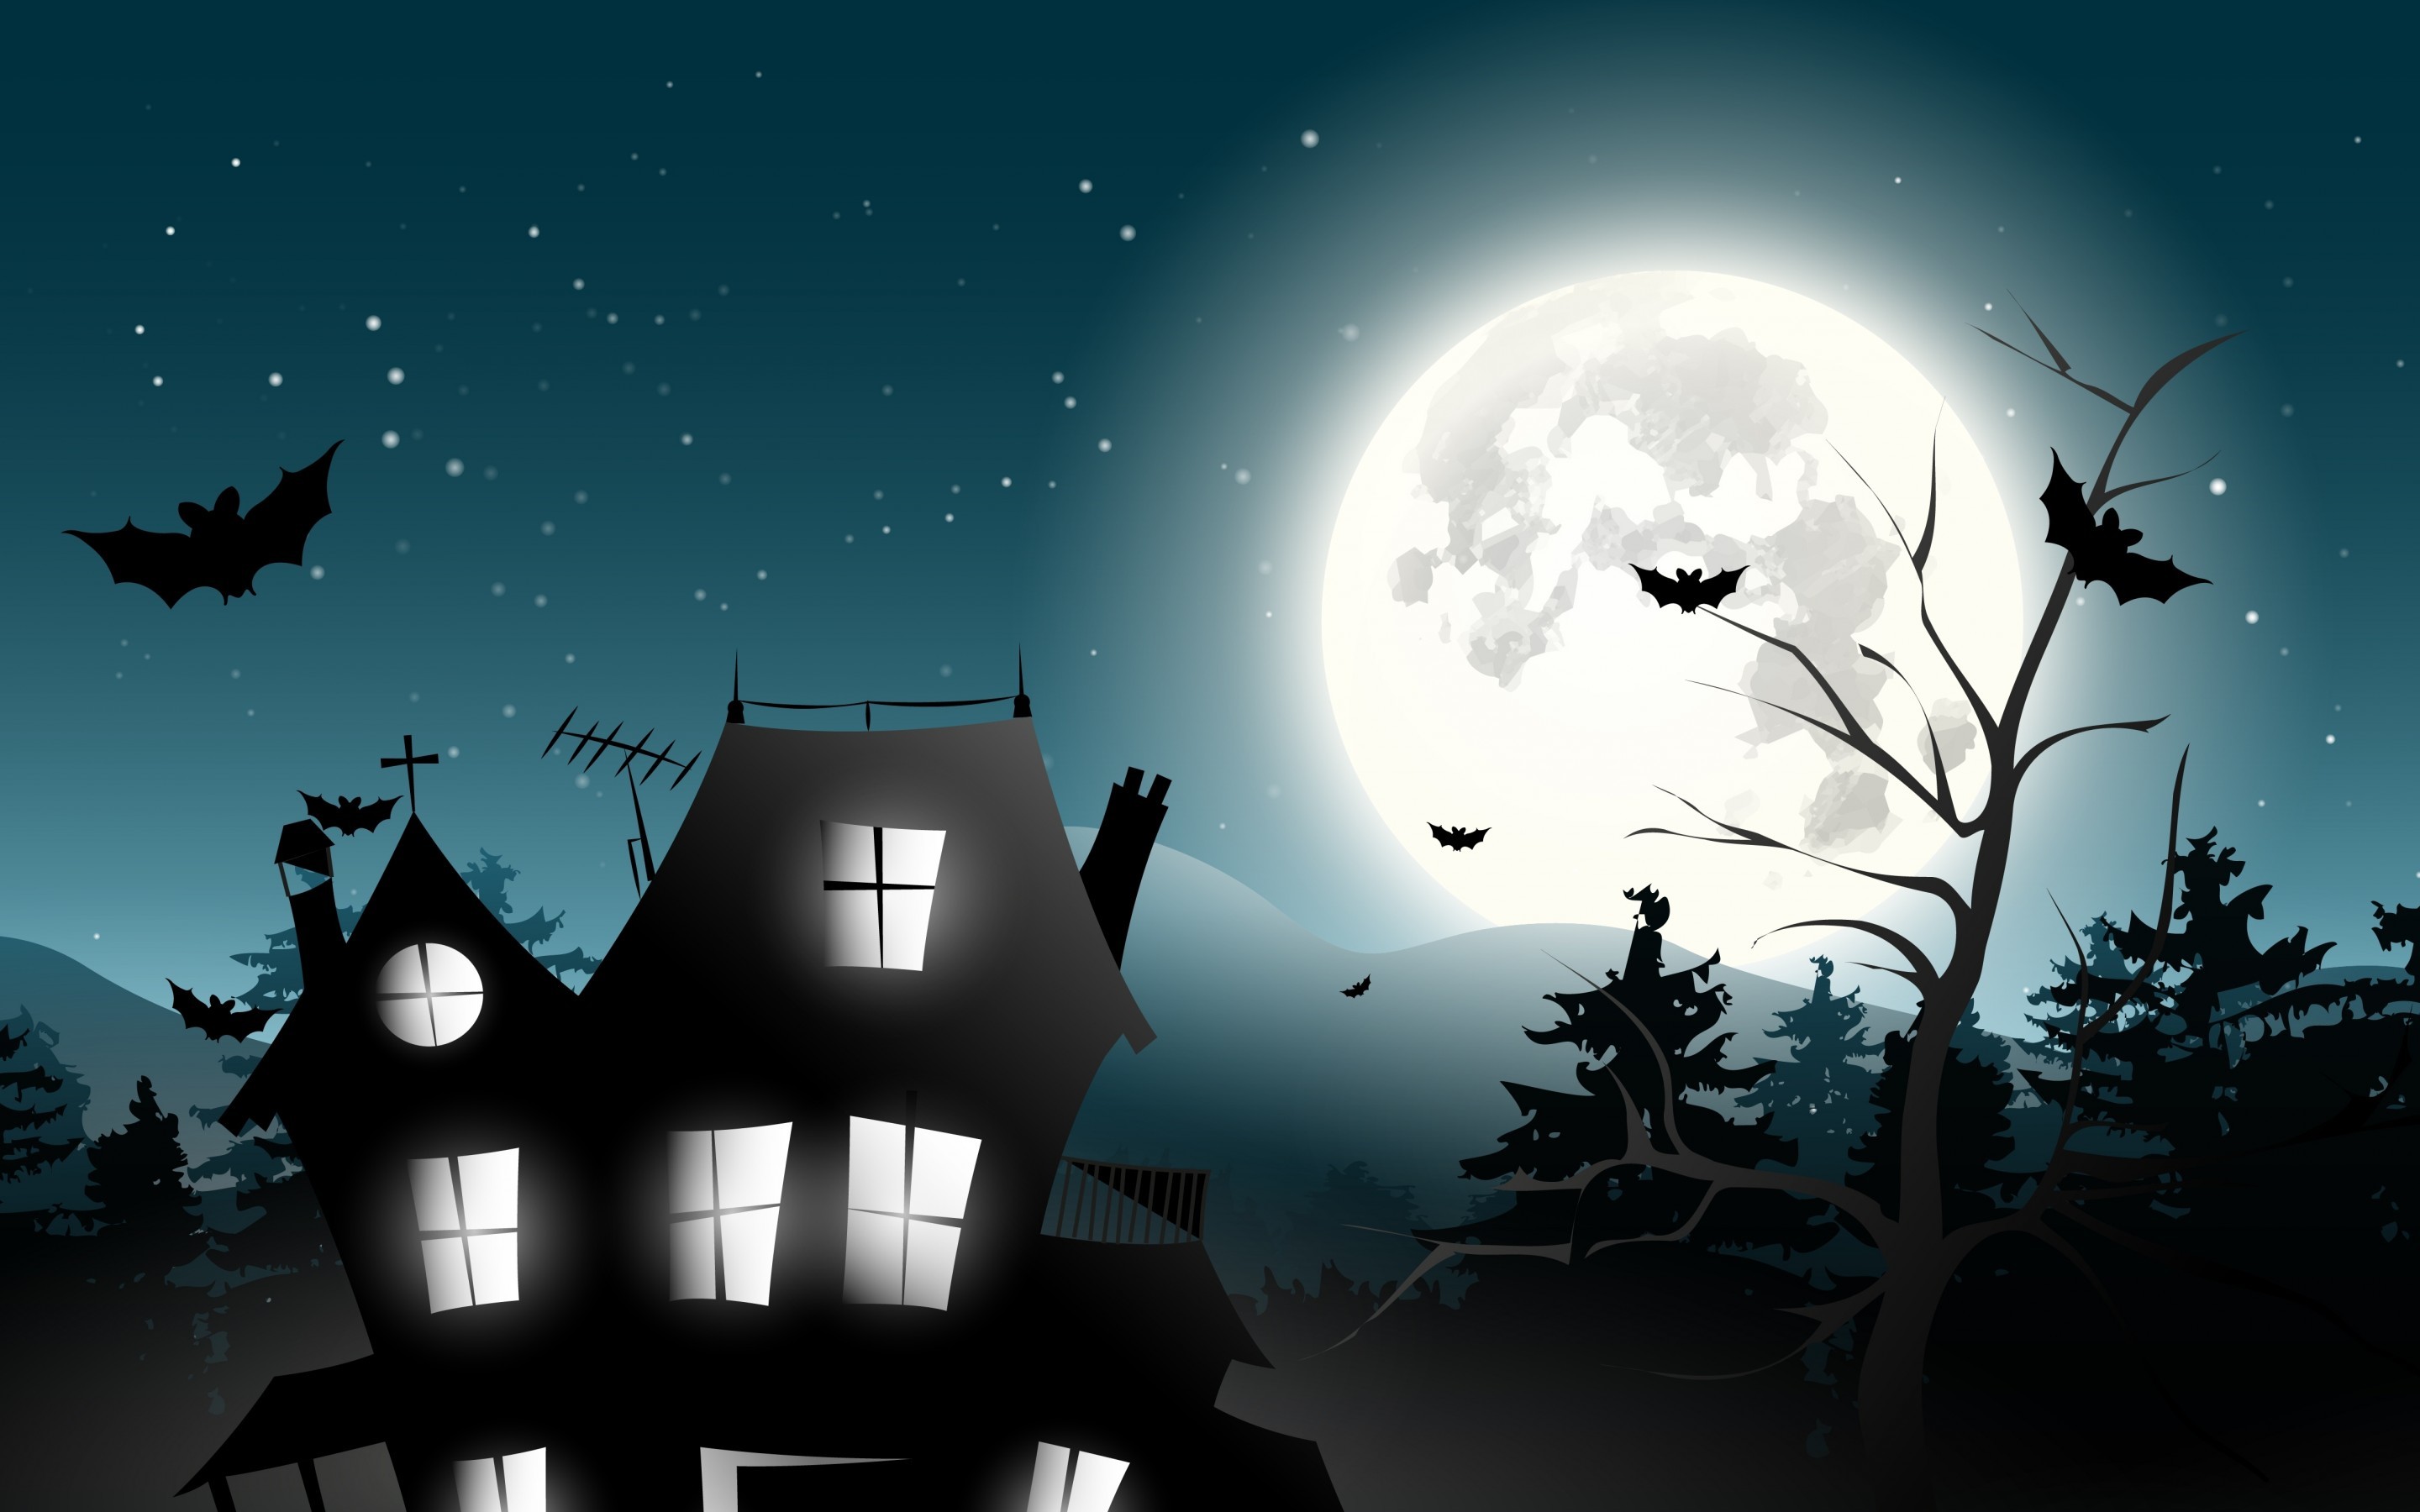 Jacck-skellington-Halloween-horror-house-horror-spooky-full-